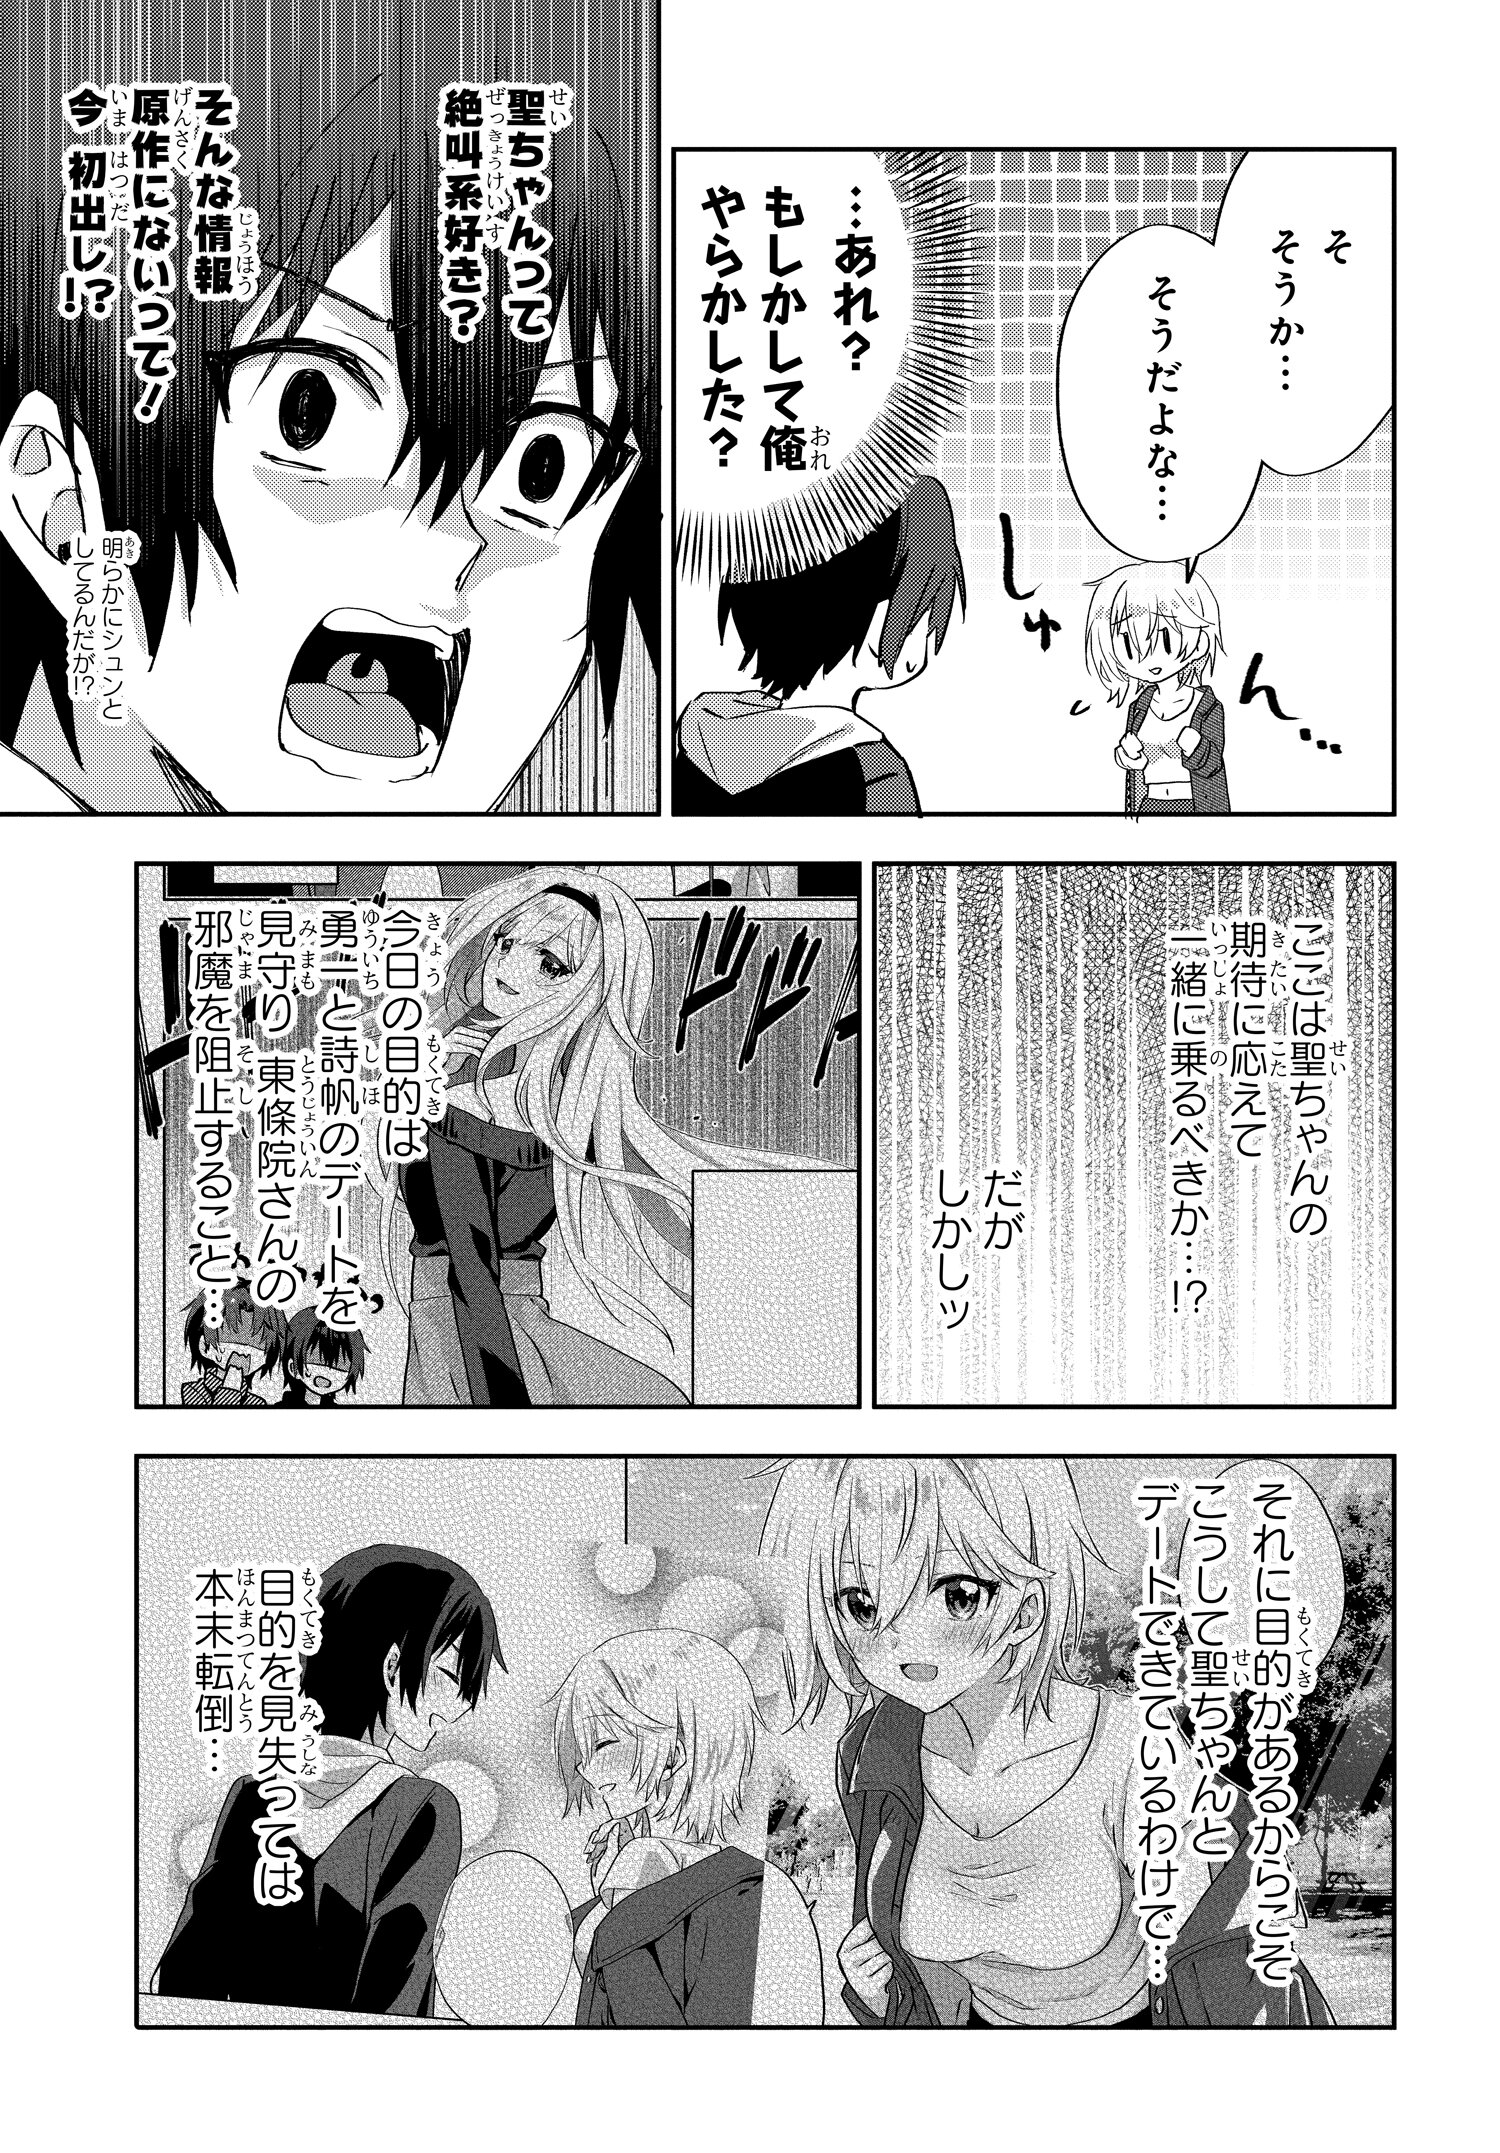 Romcom Manga ni Haitte Shimatta no de, Oshi no Make Heroine wo Zenryoku de Shiawase ni suru - Chapter 7.1 - Page 3